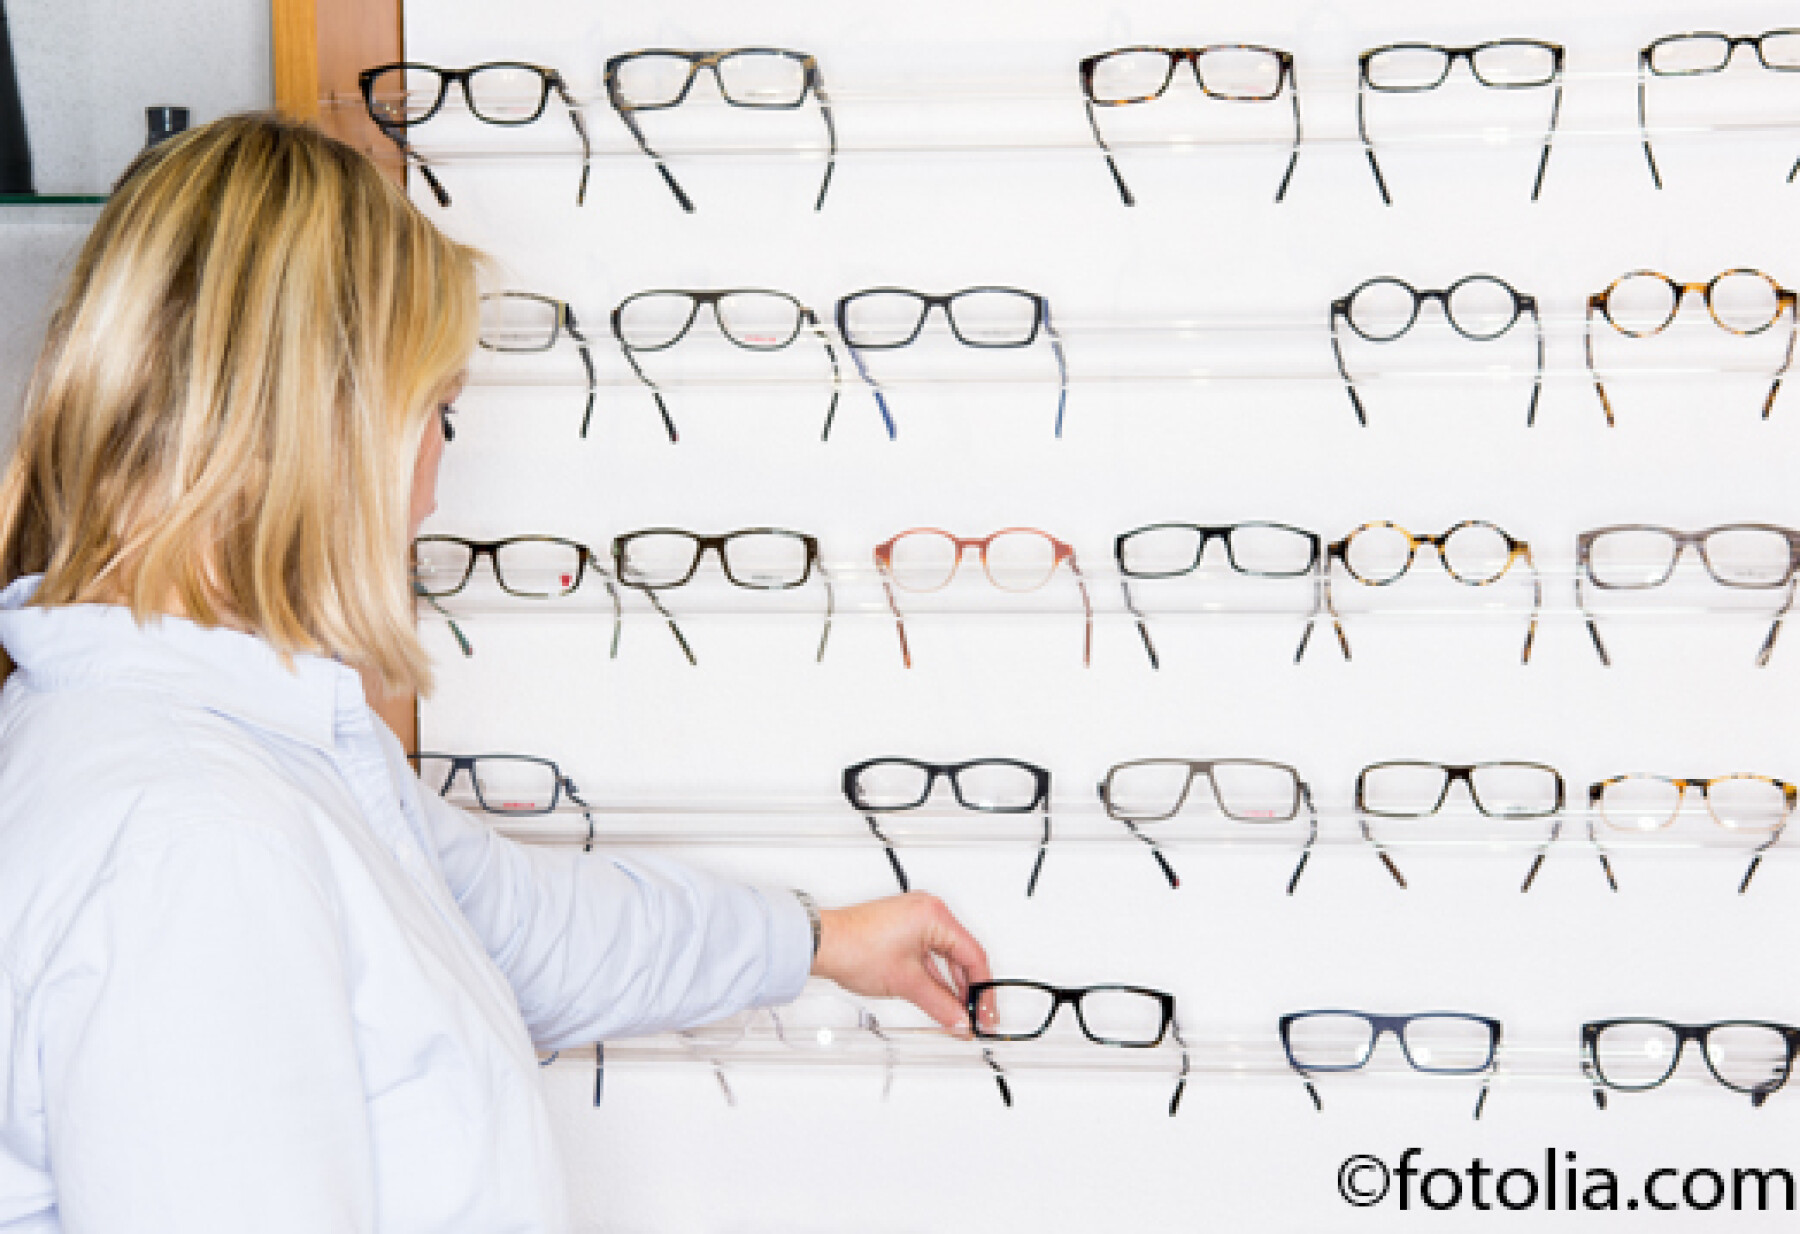 Le remboursement des lunettes pourrait être limité à 450 euros dès 2015